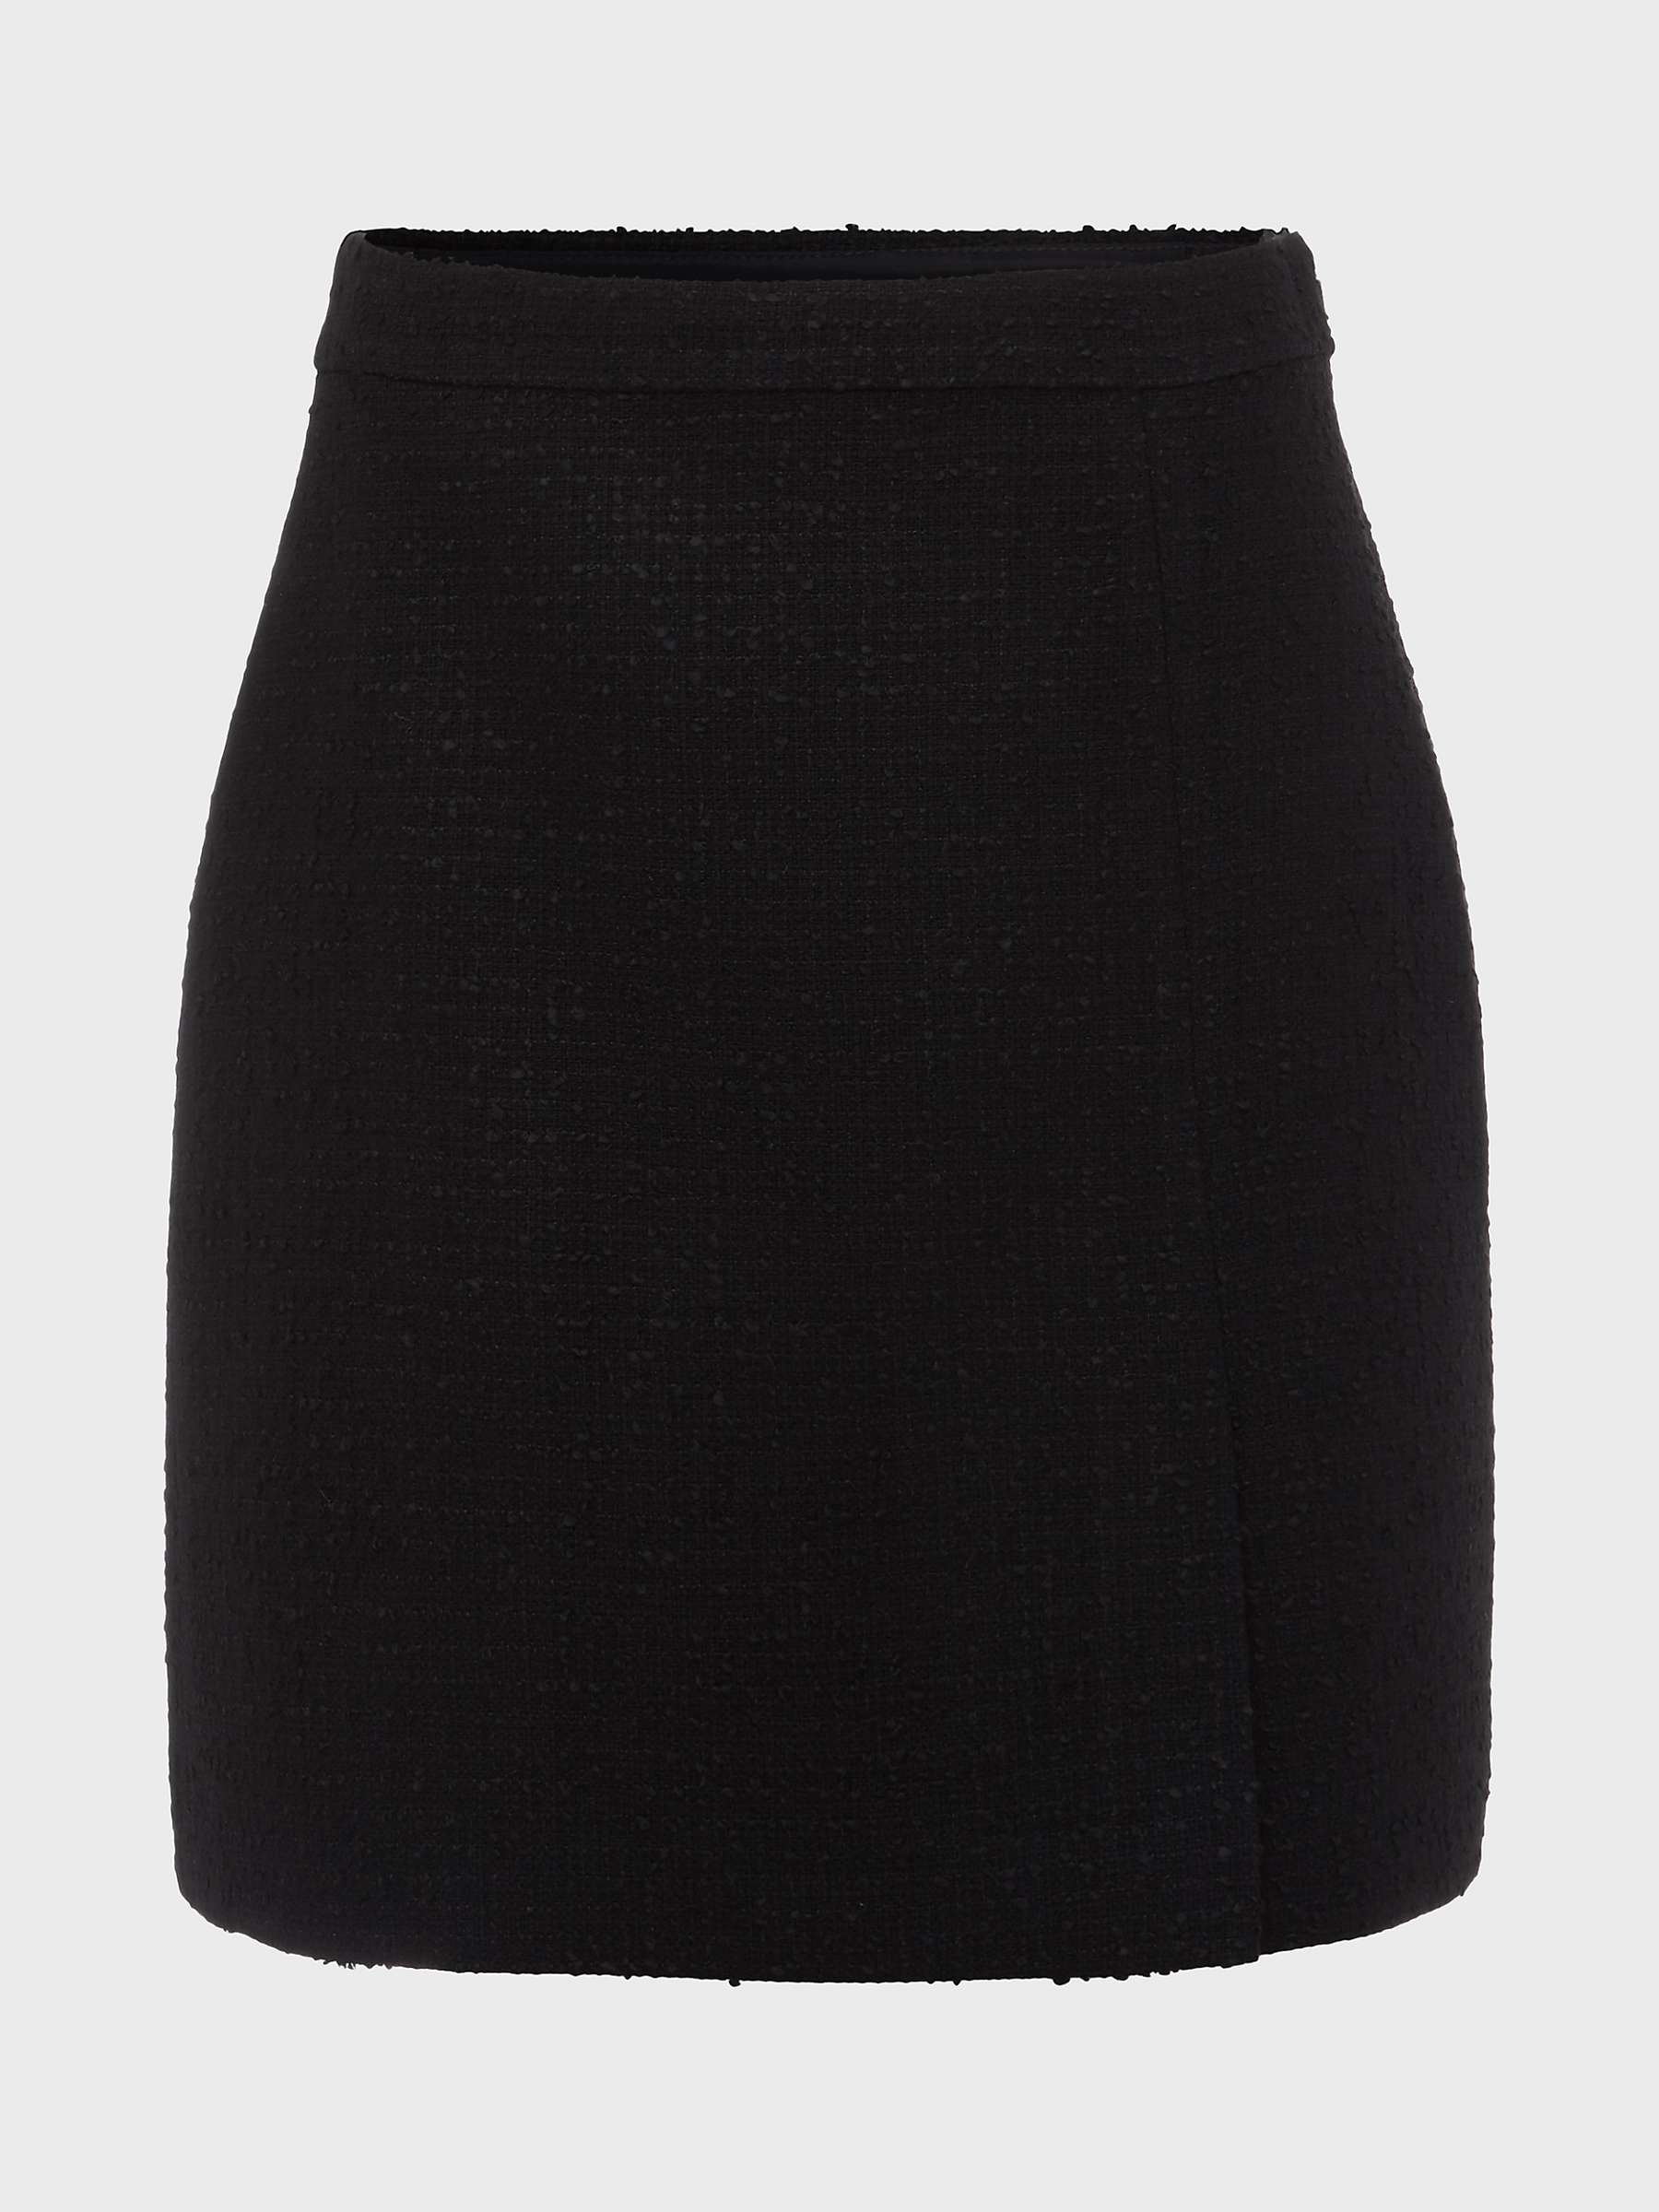 Buy Hobbs Kelly Wool Blend Mini Skirt, Black Online at johnlewis.com